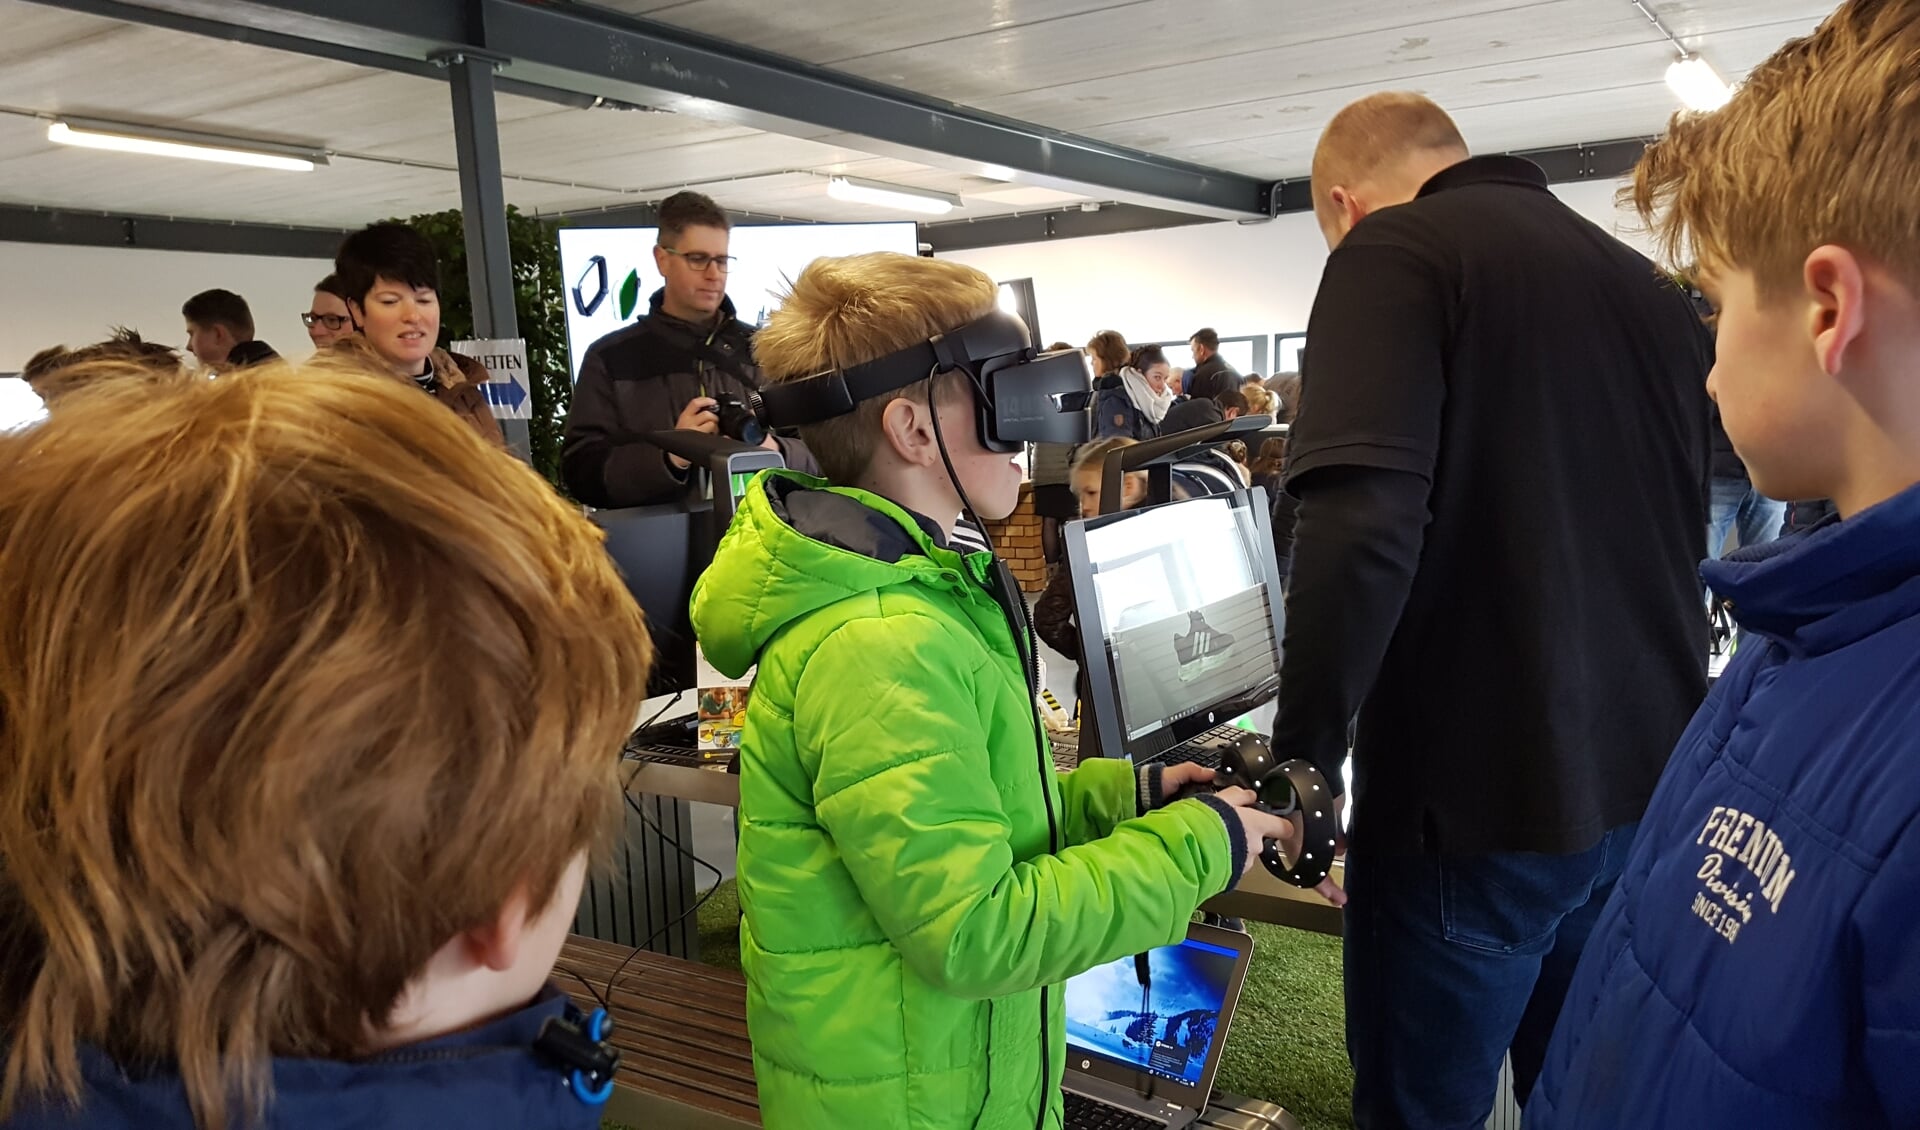 Zelf ervaren hoe het is om heftruck te rijden met heftrucksimulator op een VR-bril.  Foto: PR